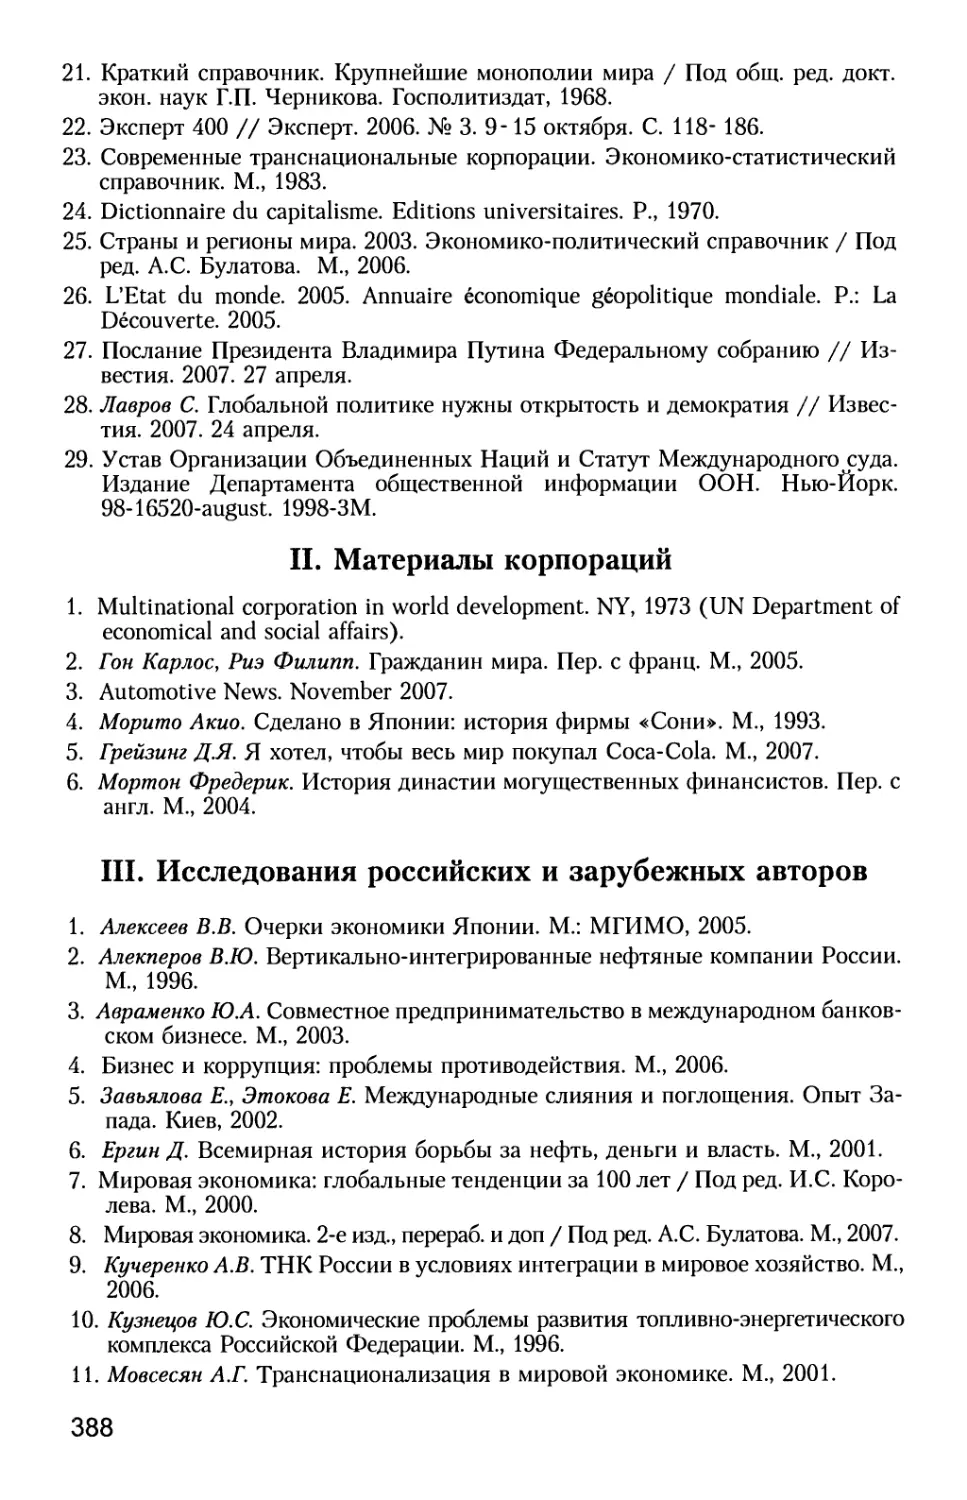 II. Материалы корпораций
III. Исследования российских и зарубежных авторов